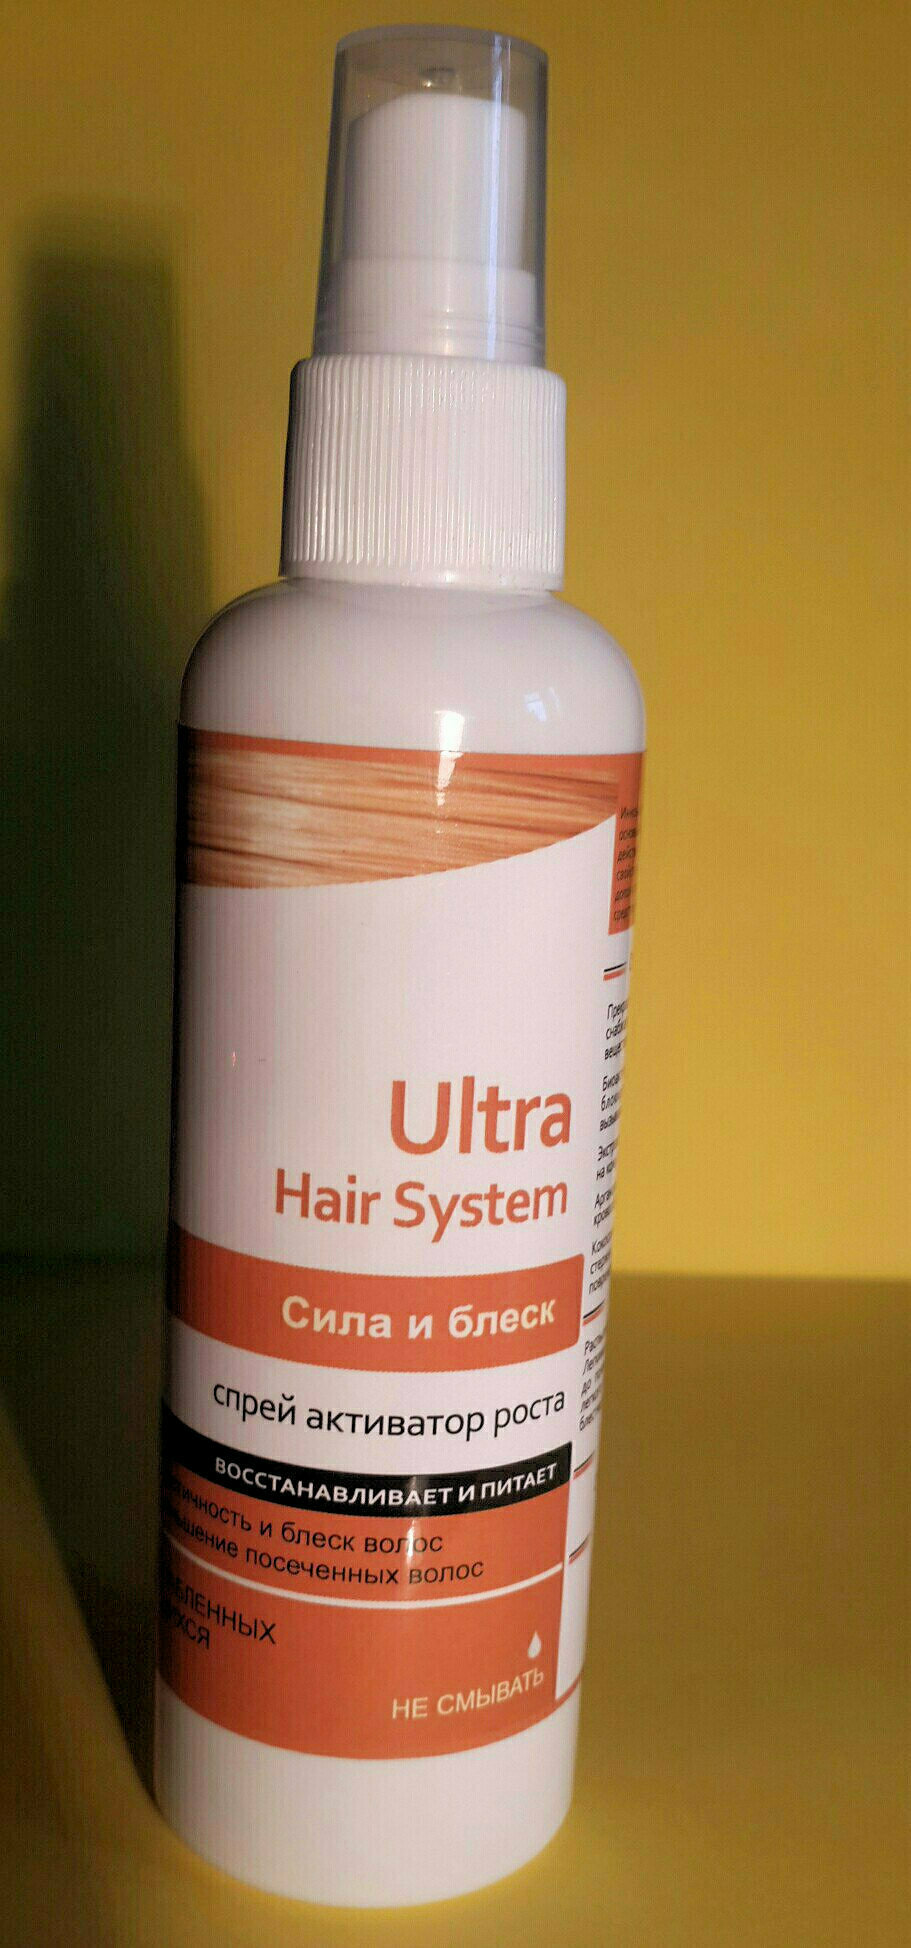 «ultra hair system» — спрей для восстановления волос